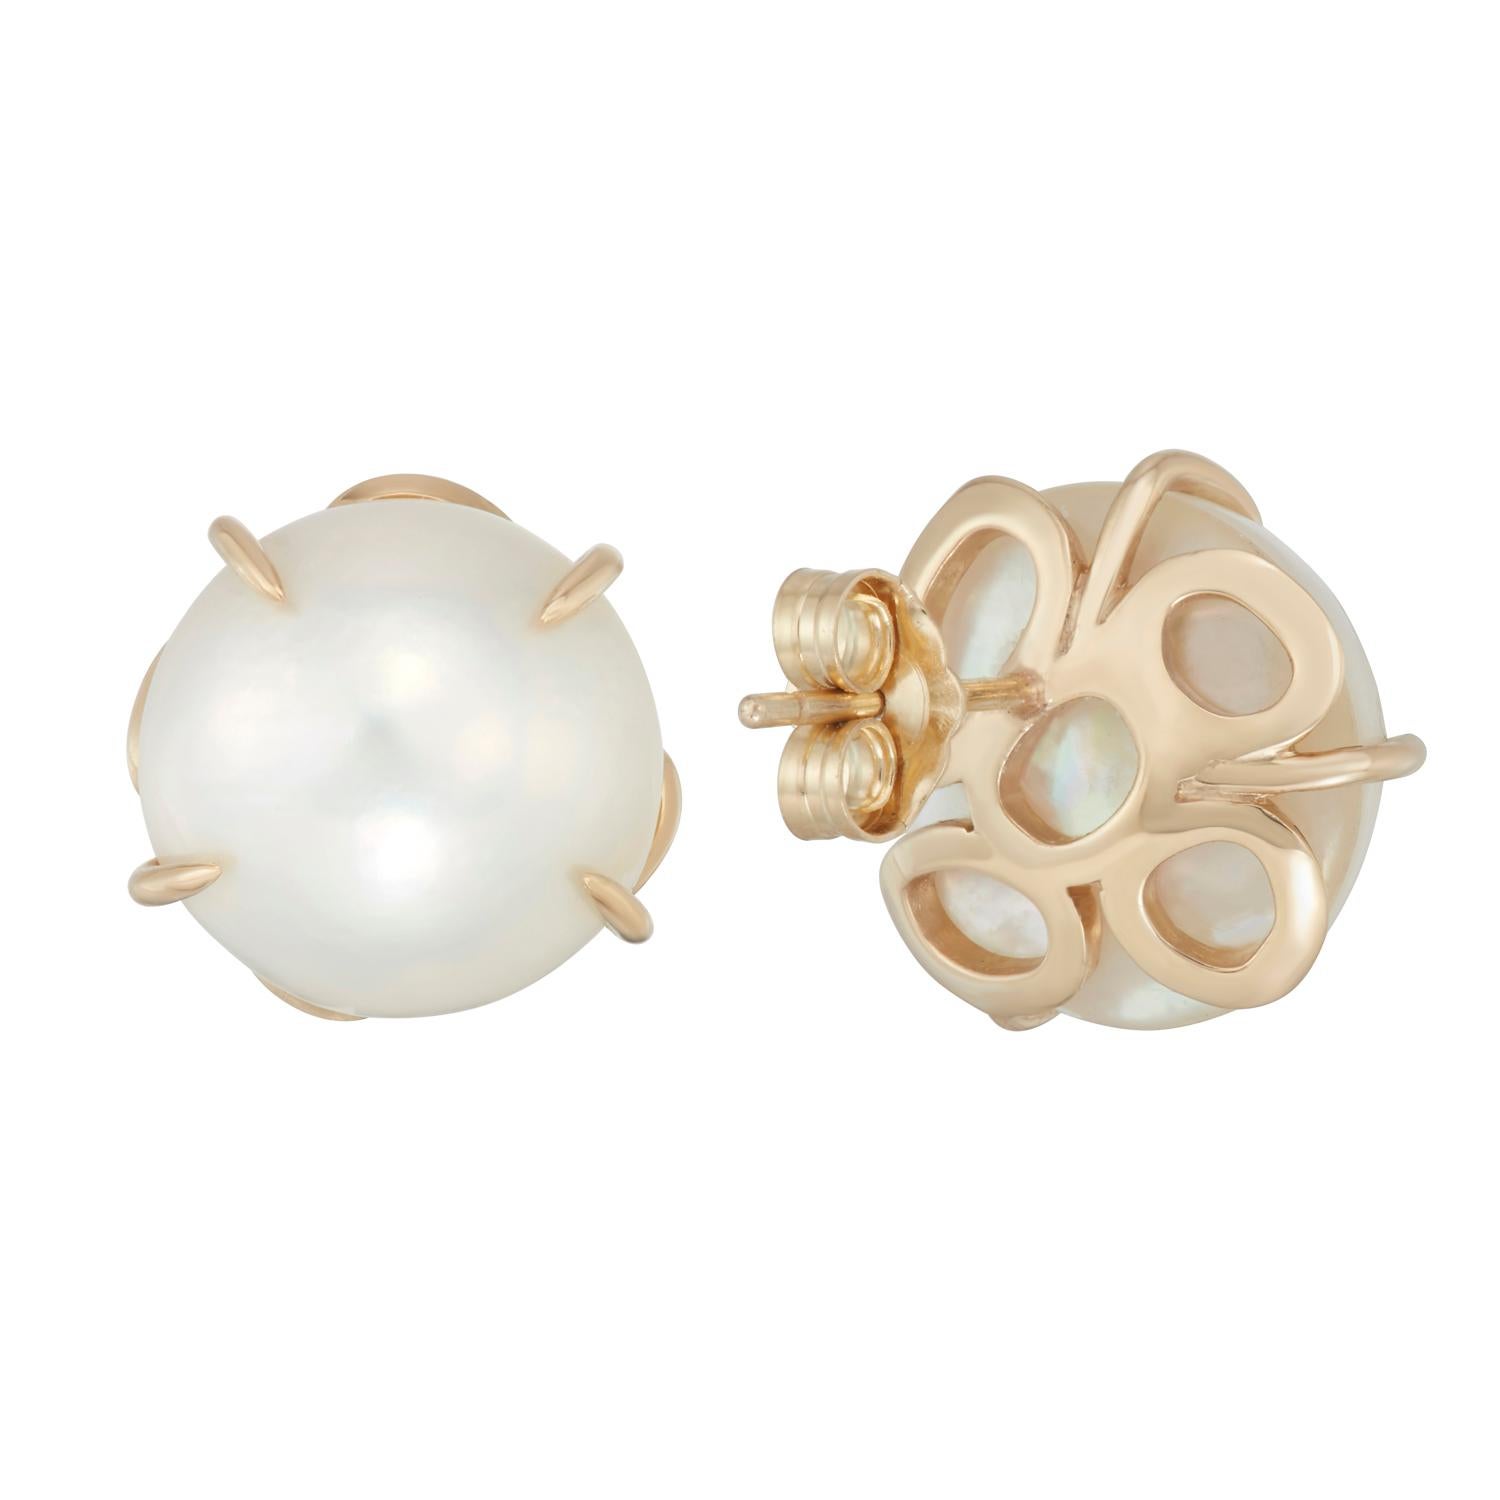 Diese kühnen, runden, glänzenden Mabe-Perlen (sprich: May-Bay) sind nicht nur ein gewöhnliches Paar Perlenohrringe, sondern auch mit den für Hi June Parker typischen organischen, runden Elementen auf der Rückseite versehen.
Tragen Sie sie mit